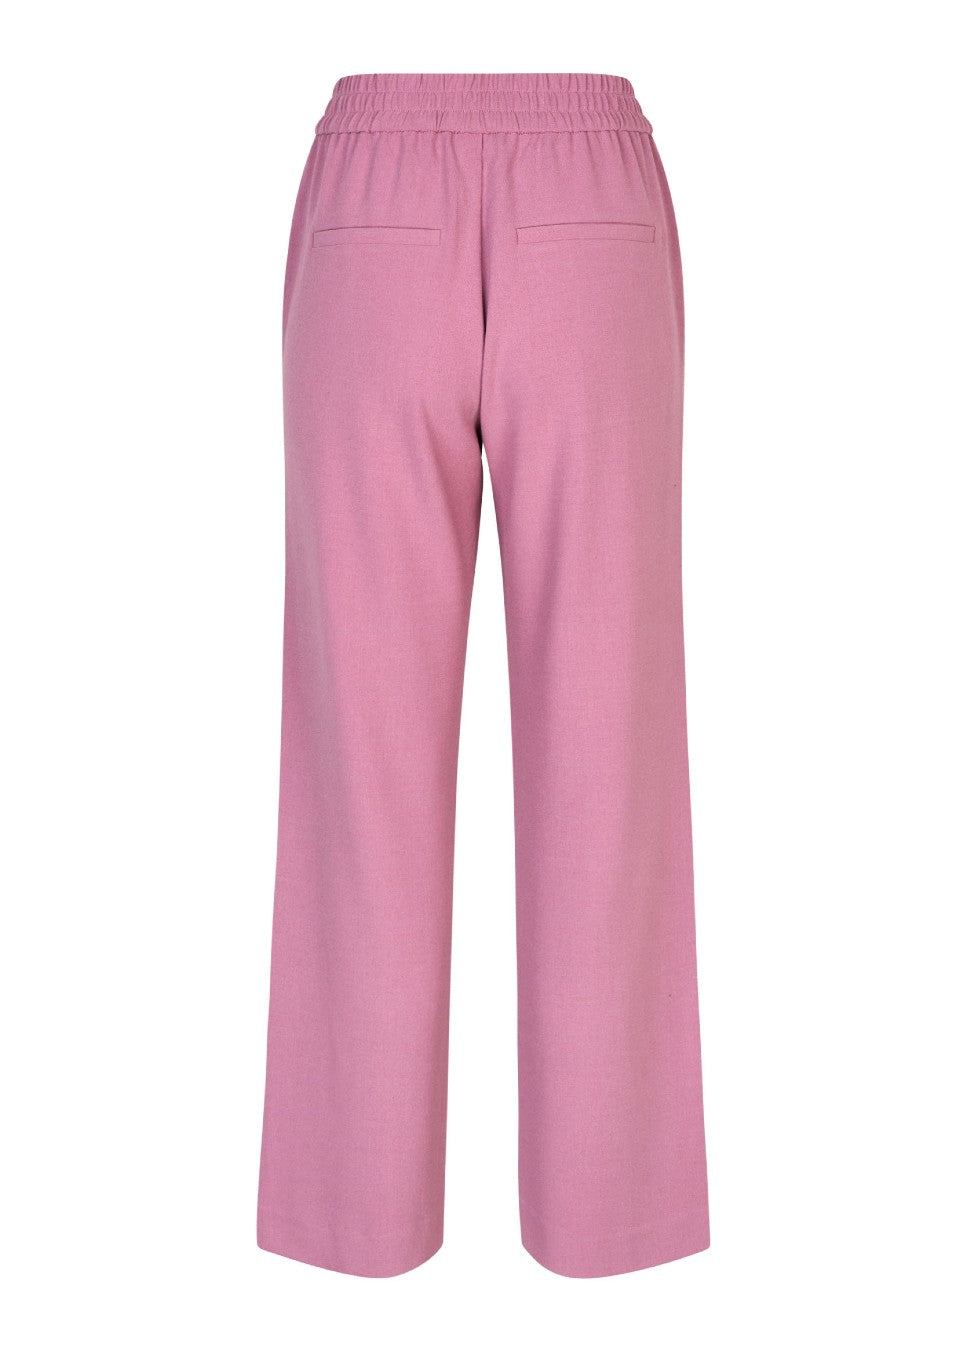 Roze Philippa pants I Comfortabel en stijlvol, deze Dusty Orchid pantalon van het merk mbyM. De Philippa pantalon is gemaakt van een soepele stof en heeft een elastische tailleband. De wijd vallende broek heeft steekzakken. Shop de nieuwe collectie dames pantalons, Philippa pants, mbym broeken, roze dames pantalons.